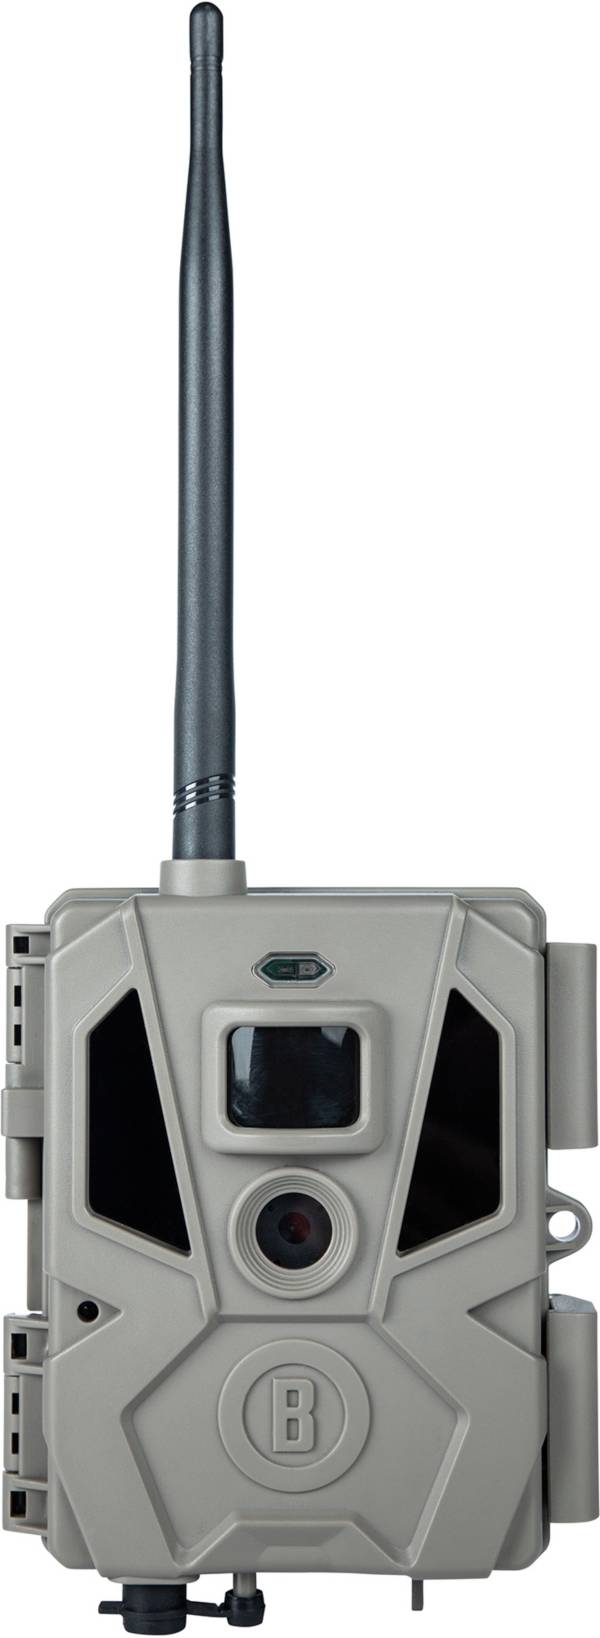 Bushnell Cellucore V20 Cellular Camera – 20 MP product image